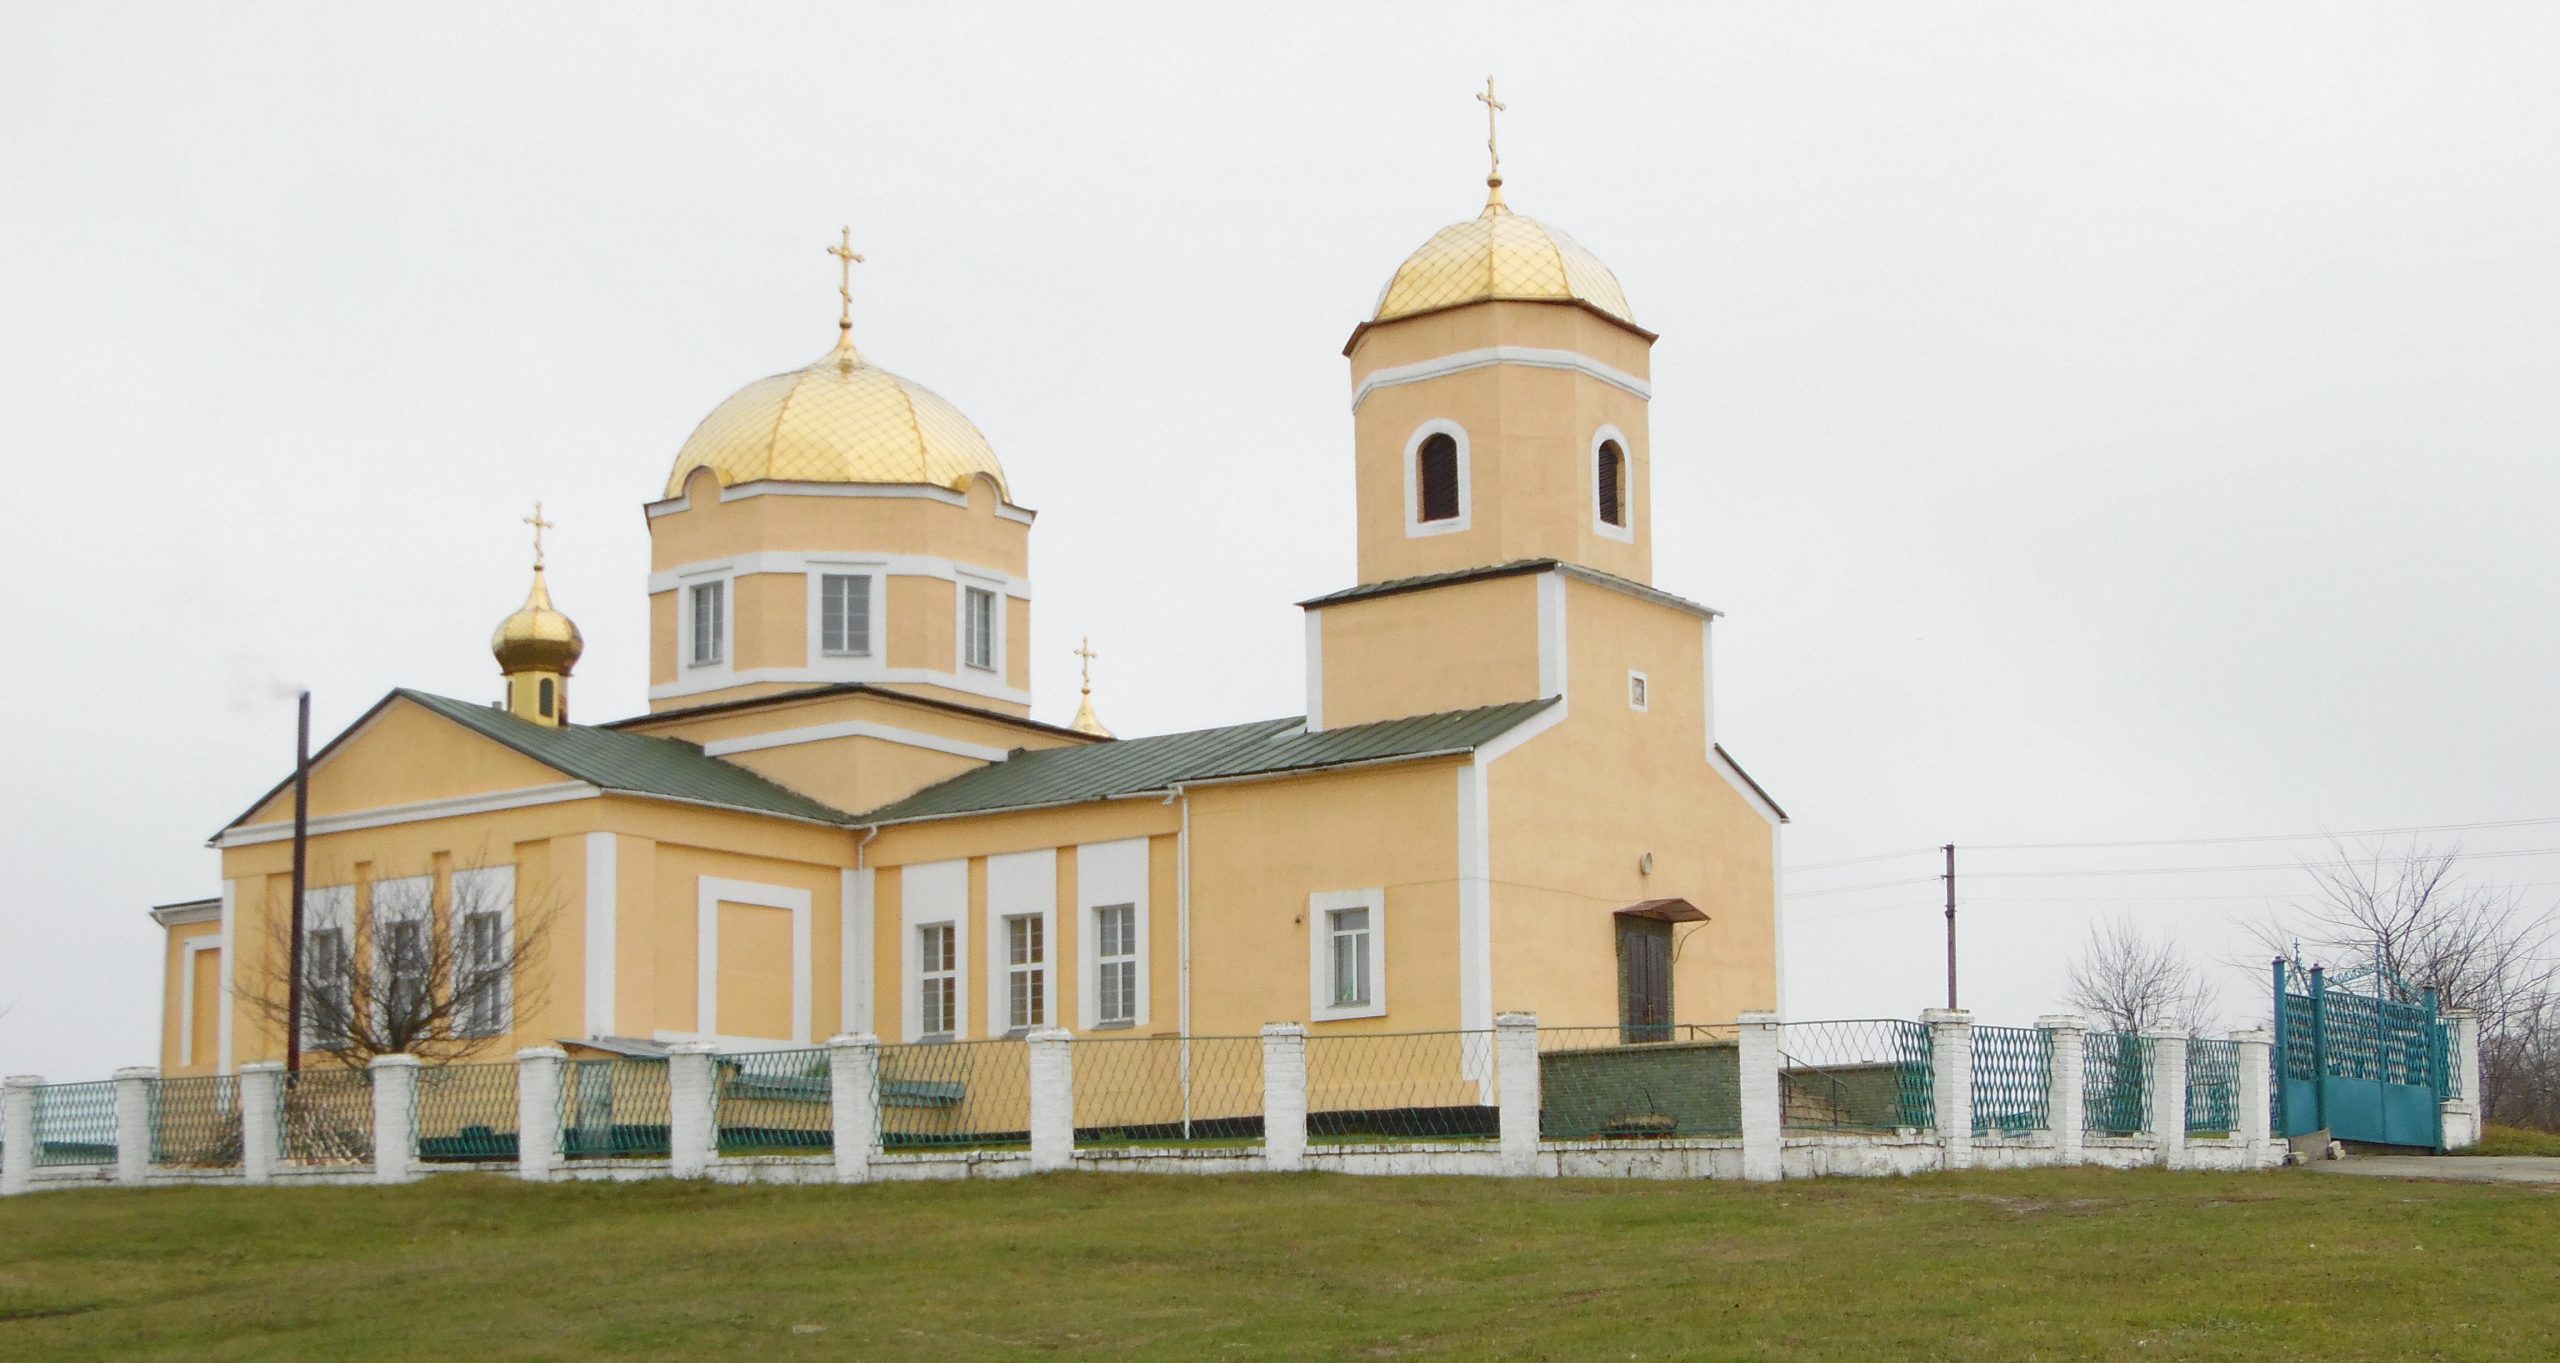 Іллінська церква. Фото надане керівництвом громади